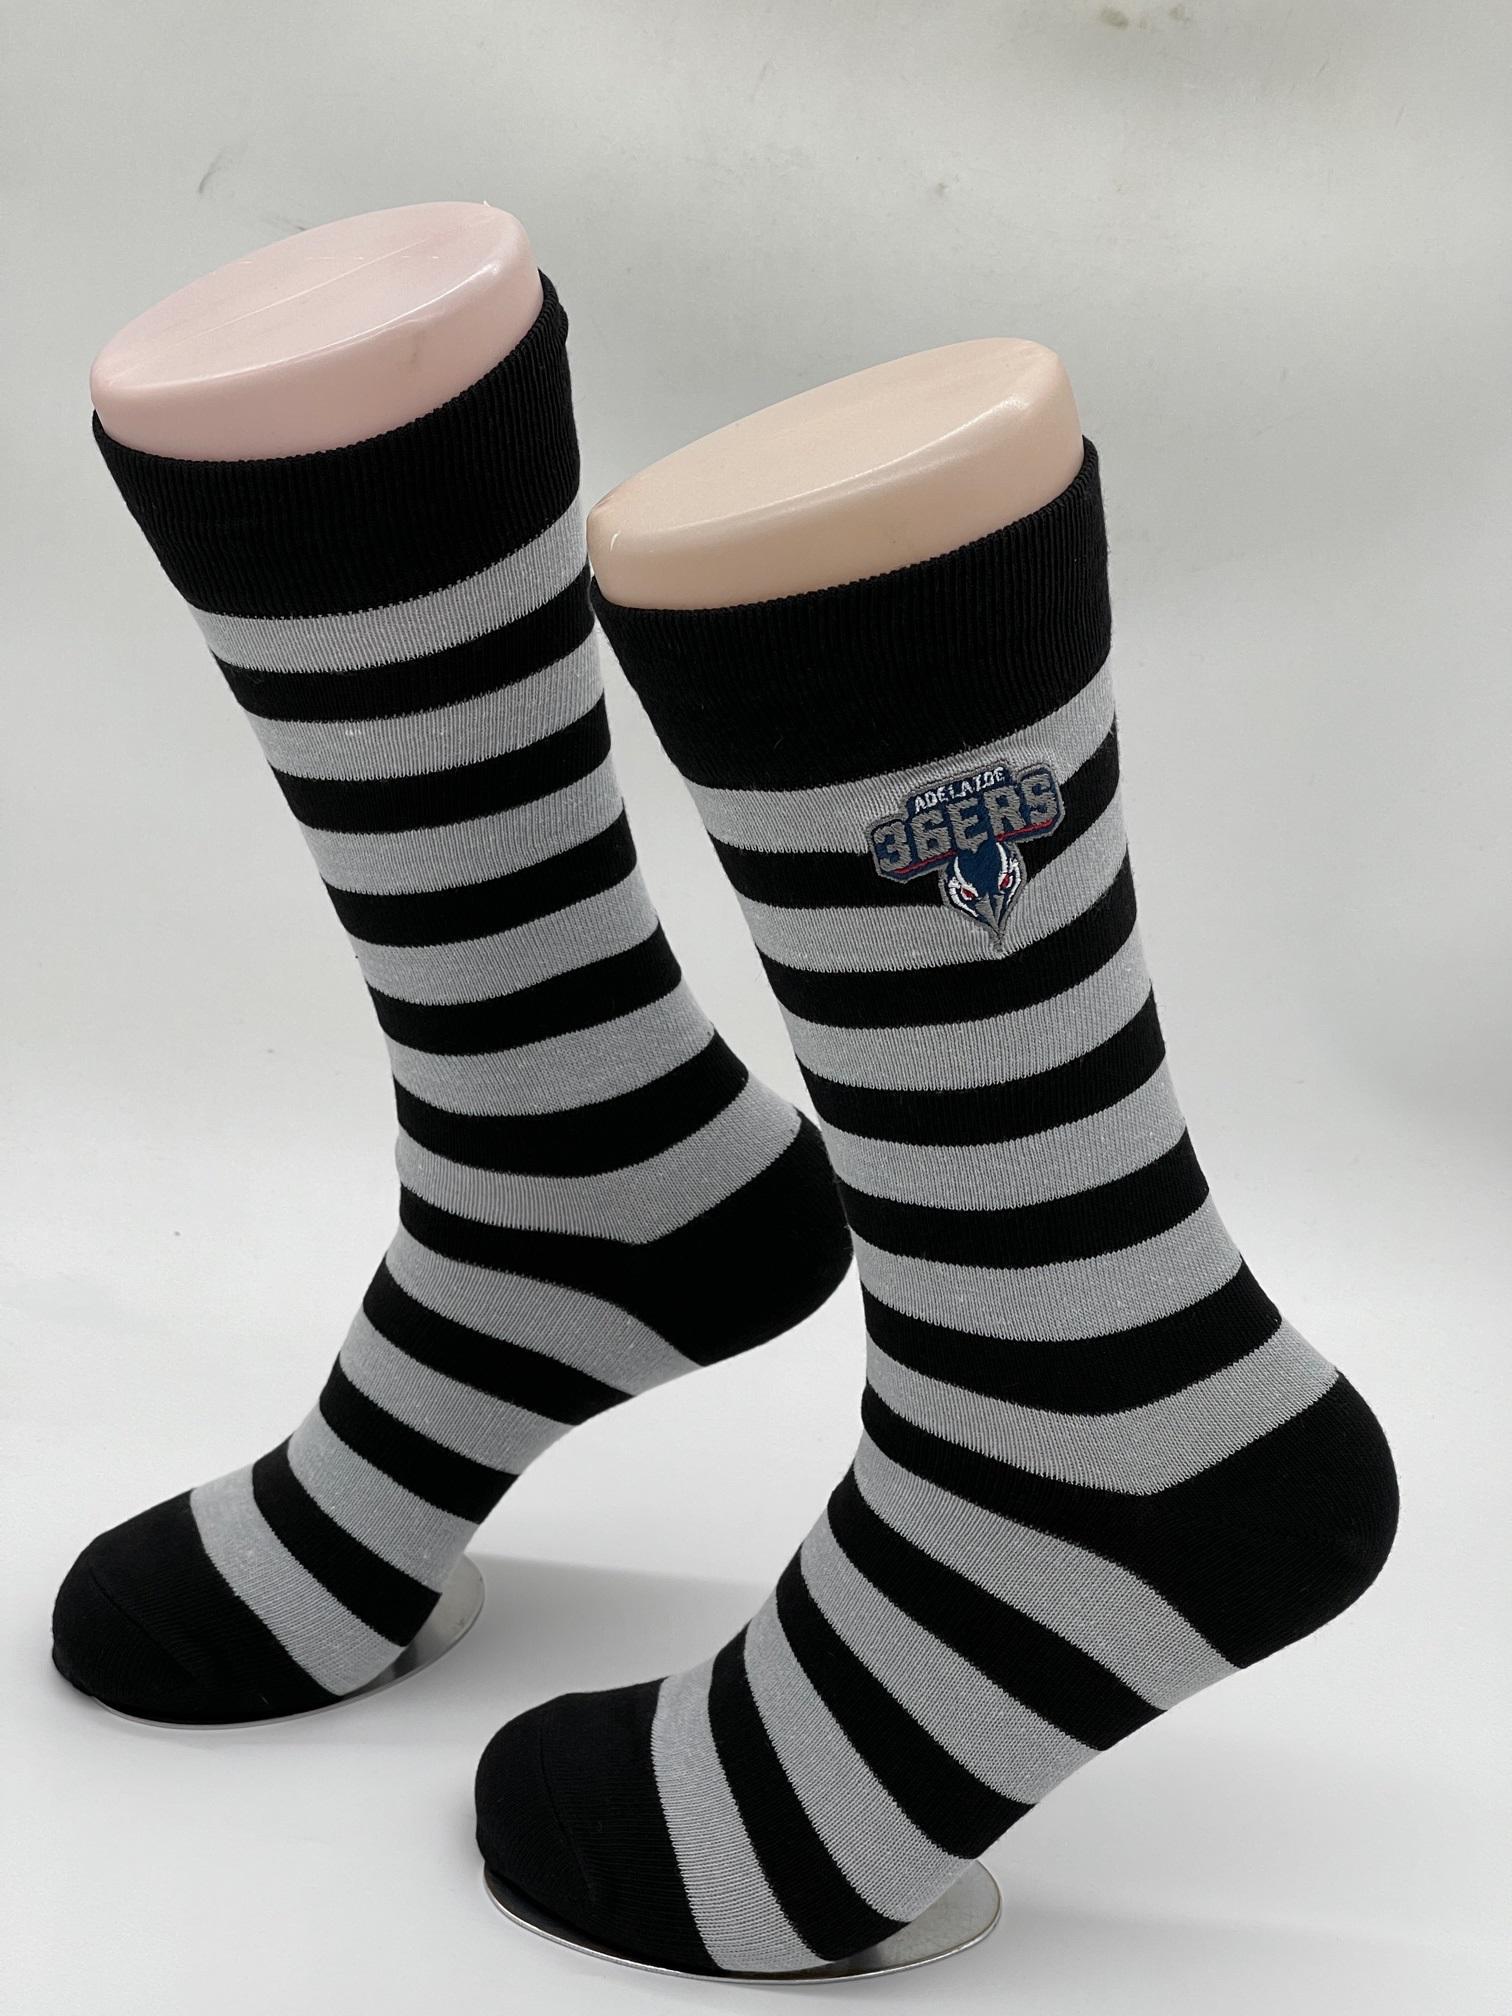 Logo Black Hooped Business Socks - Adelaide 36ers